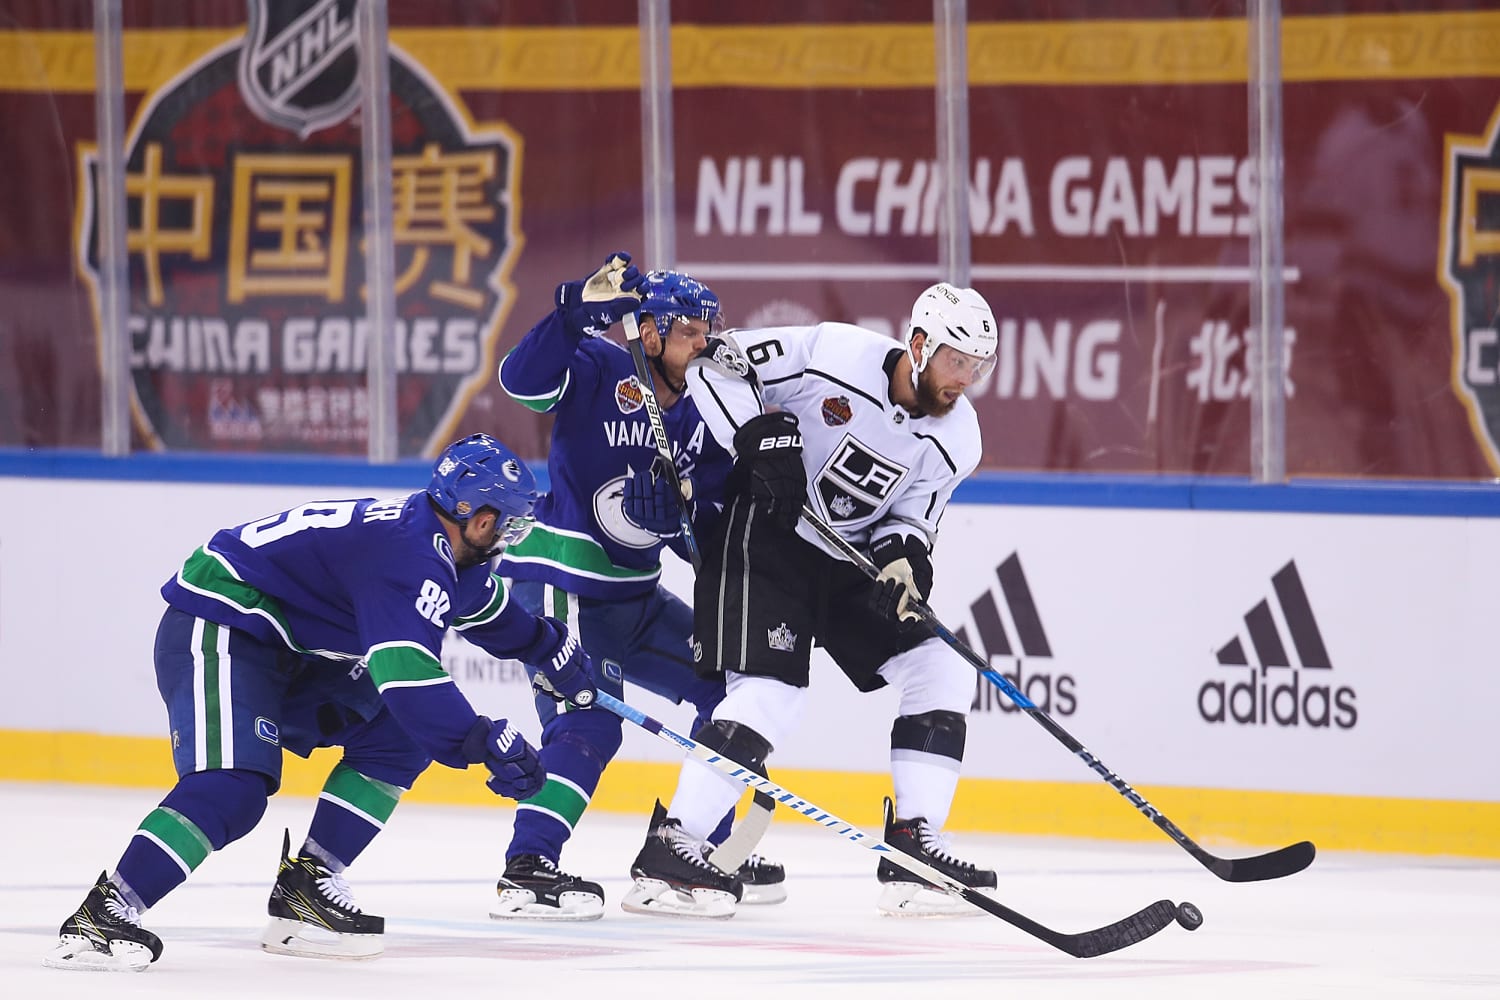 NHL Records - China Games